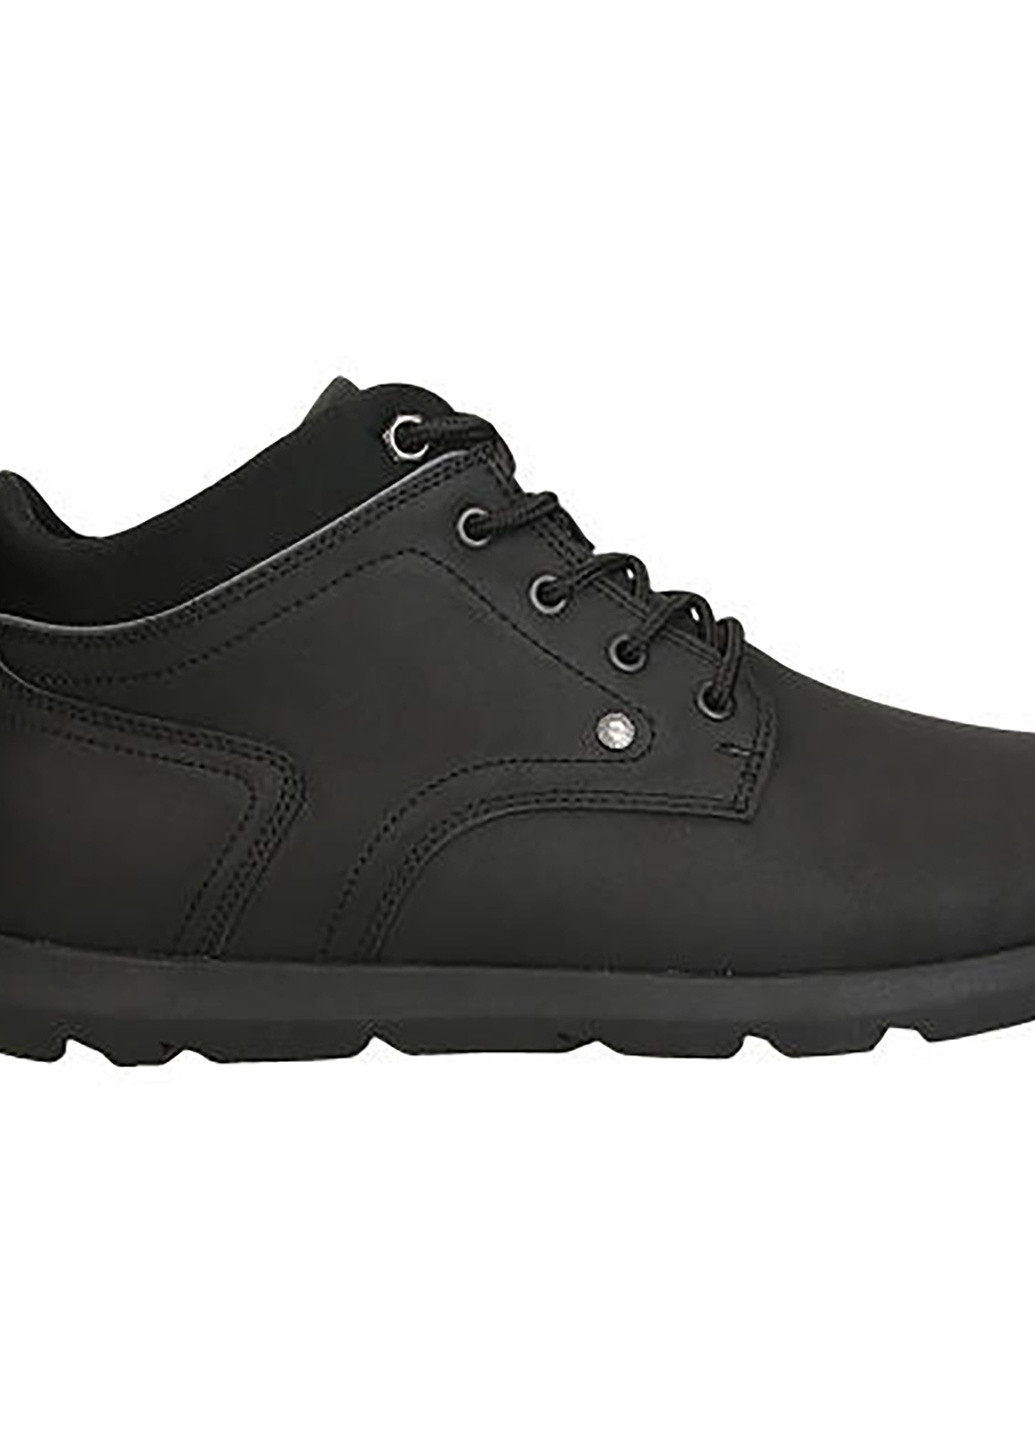 Черные осенние черевики mp07-01491-01 Lanetti